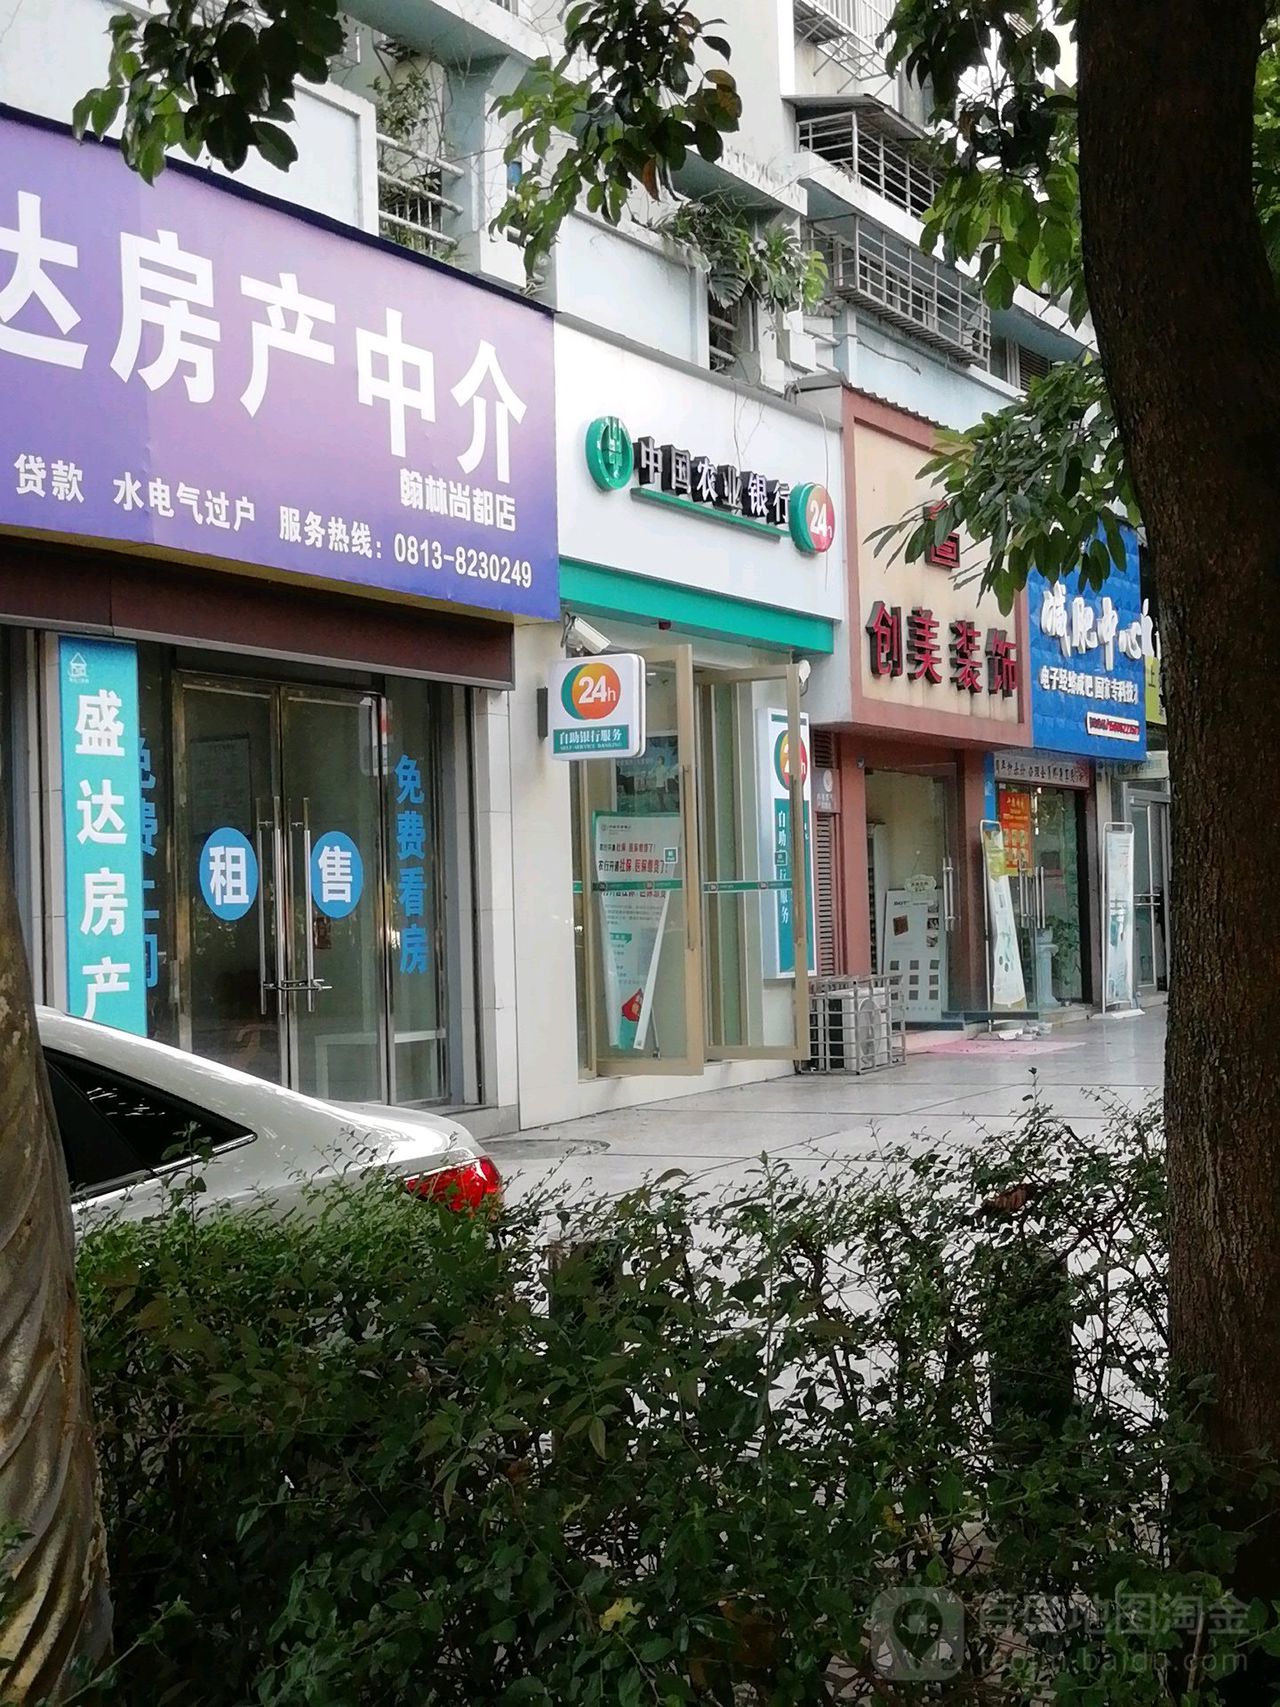 中國工商銀行24小時自助銀行服務(匯川支行)